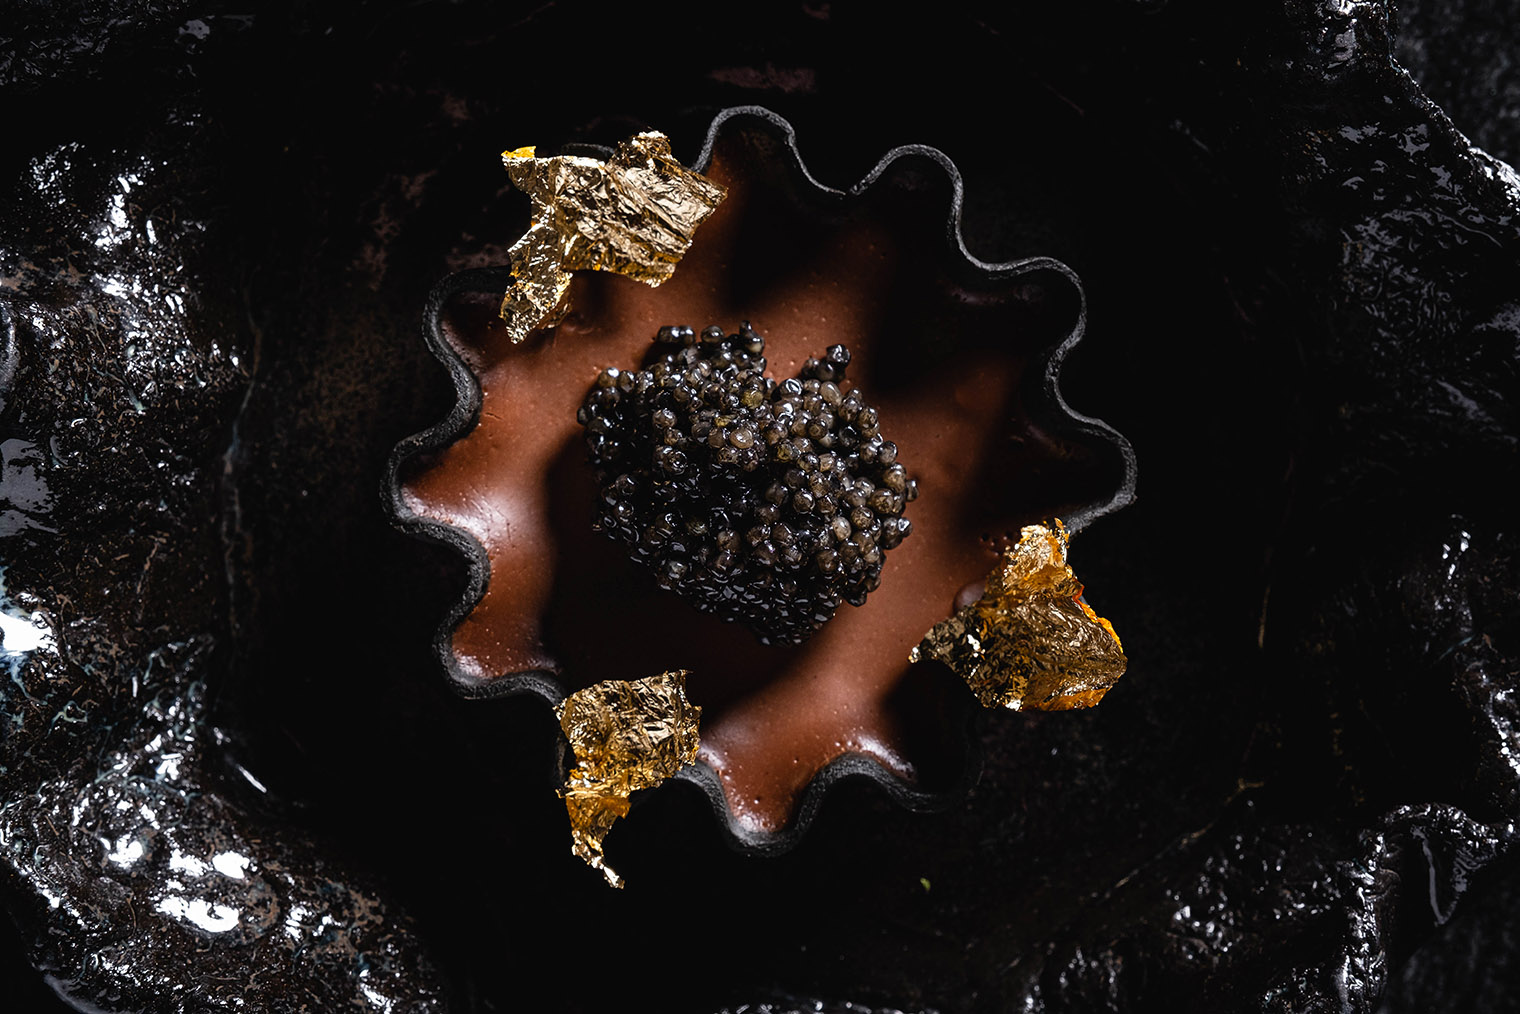 Тарт с перуанским шоколадом приносят на черном волнистом блюде, повторяющем изгибы тарталетки. Источник: maya.lucky-group.rest